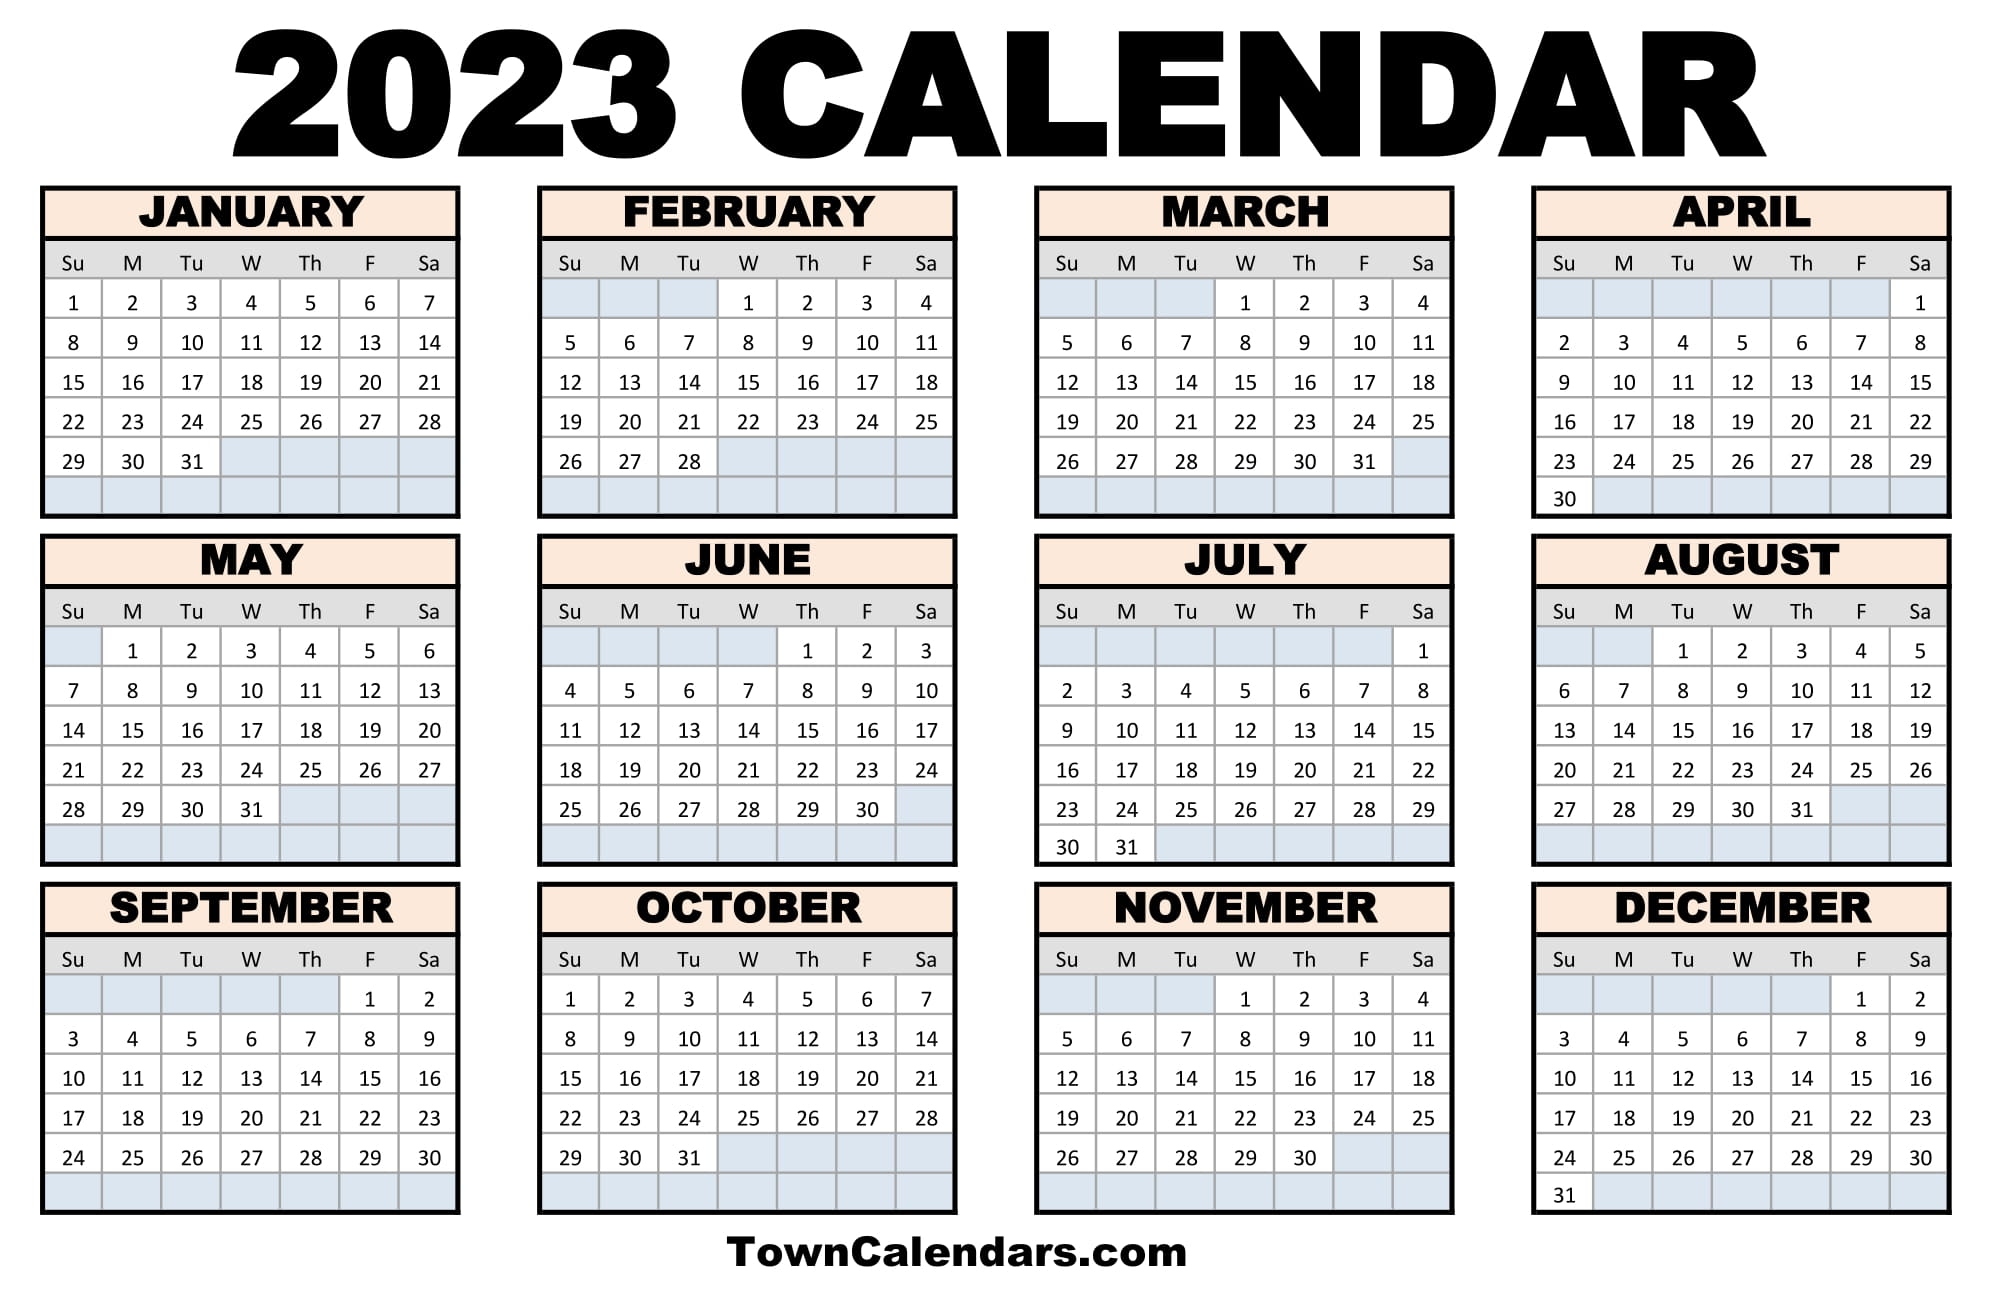 Free Printable 2024 Calendar From Towncalendars Com 2024 CALENDAR - Free Printable 2024 Calendar From Towncalendars